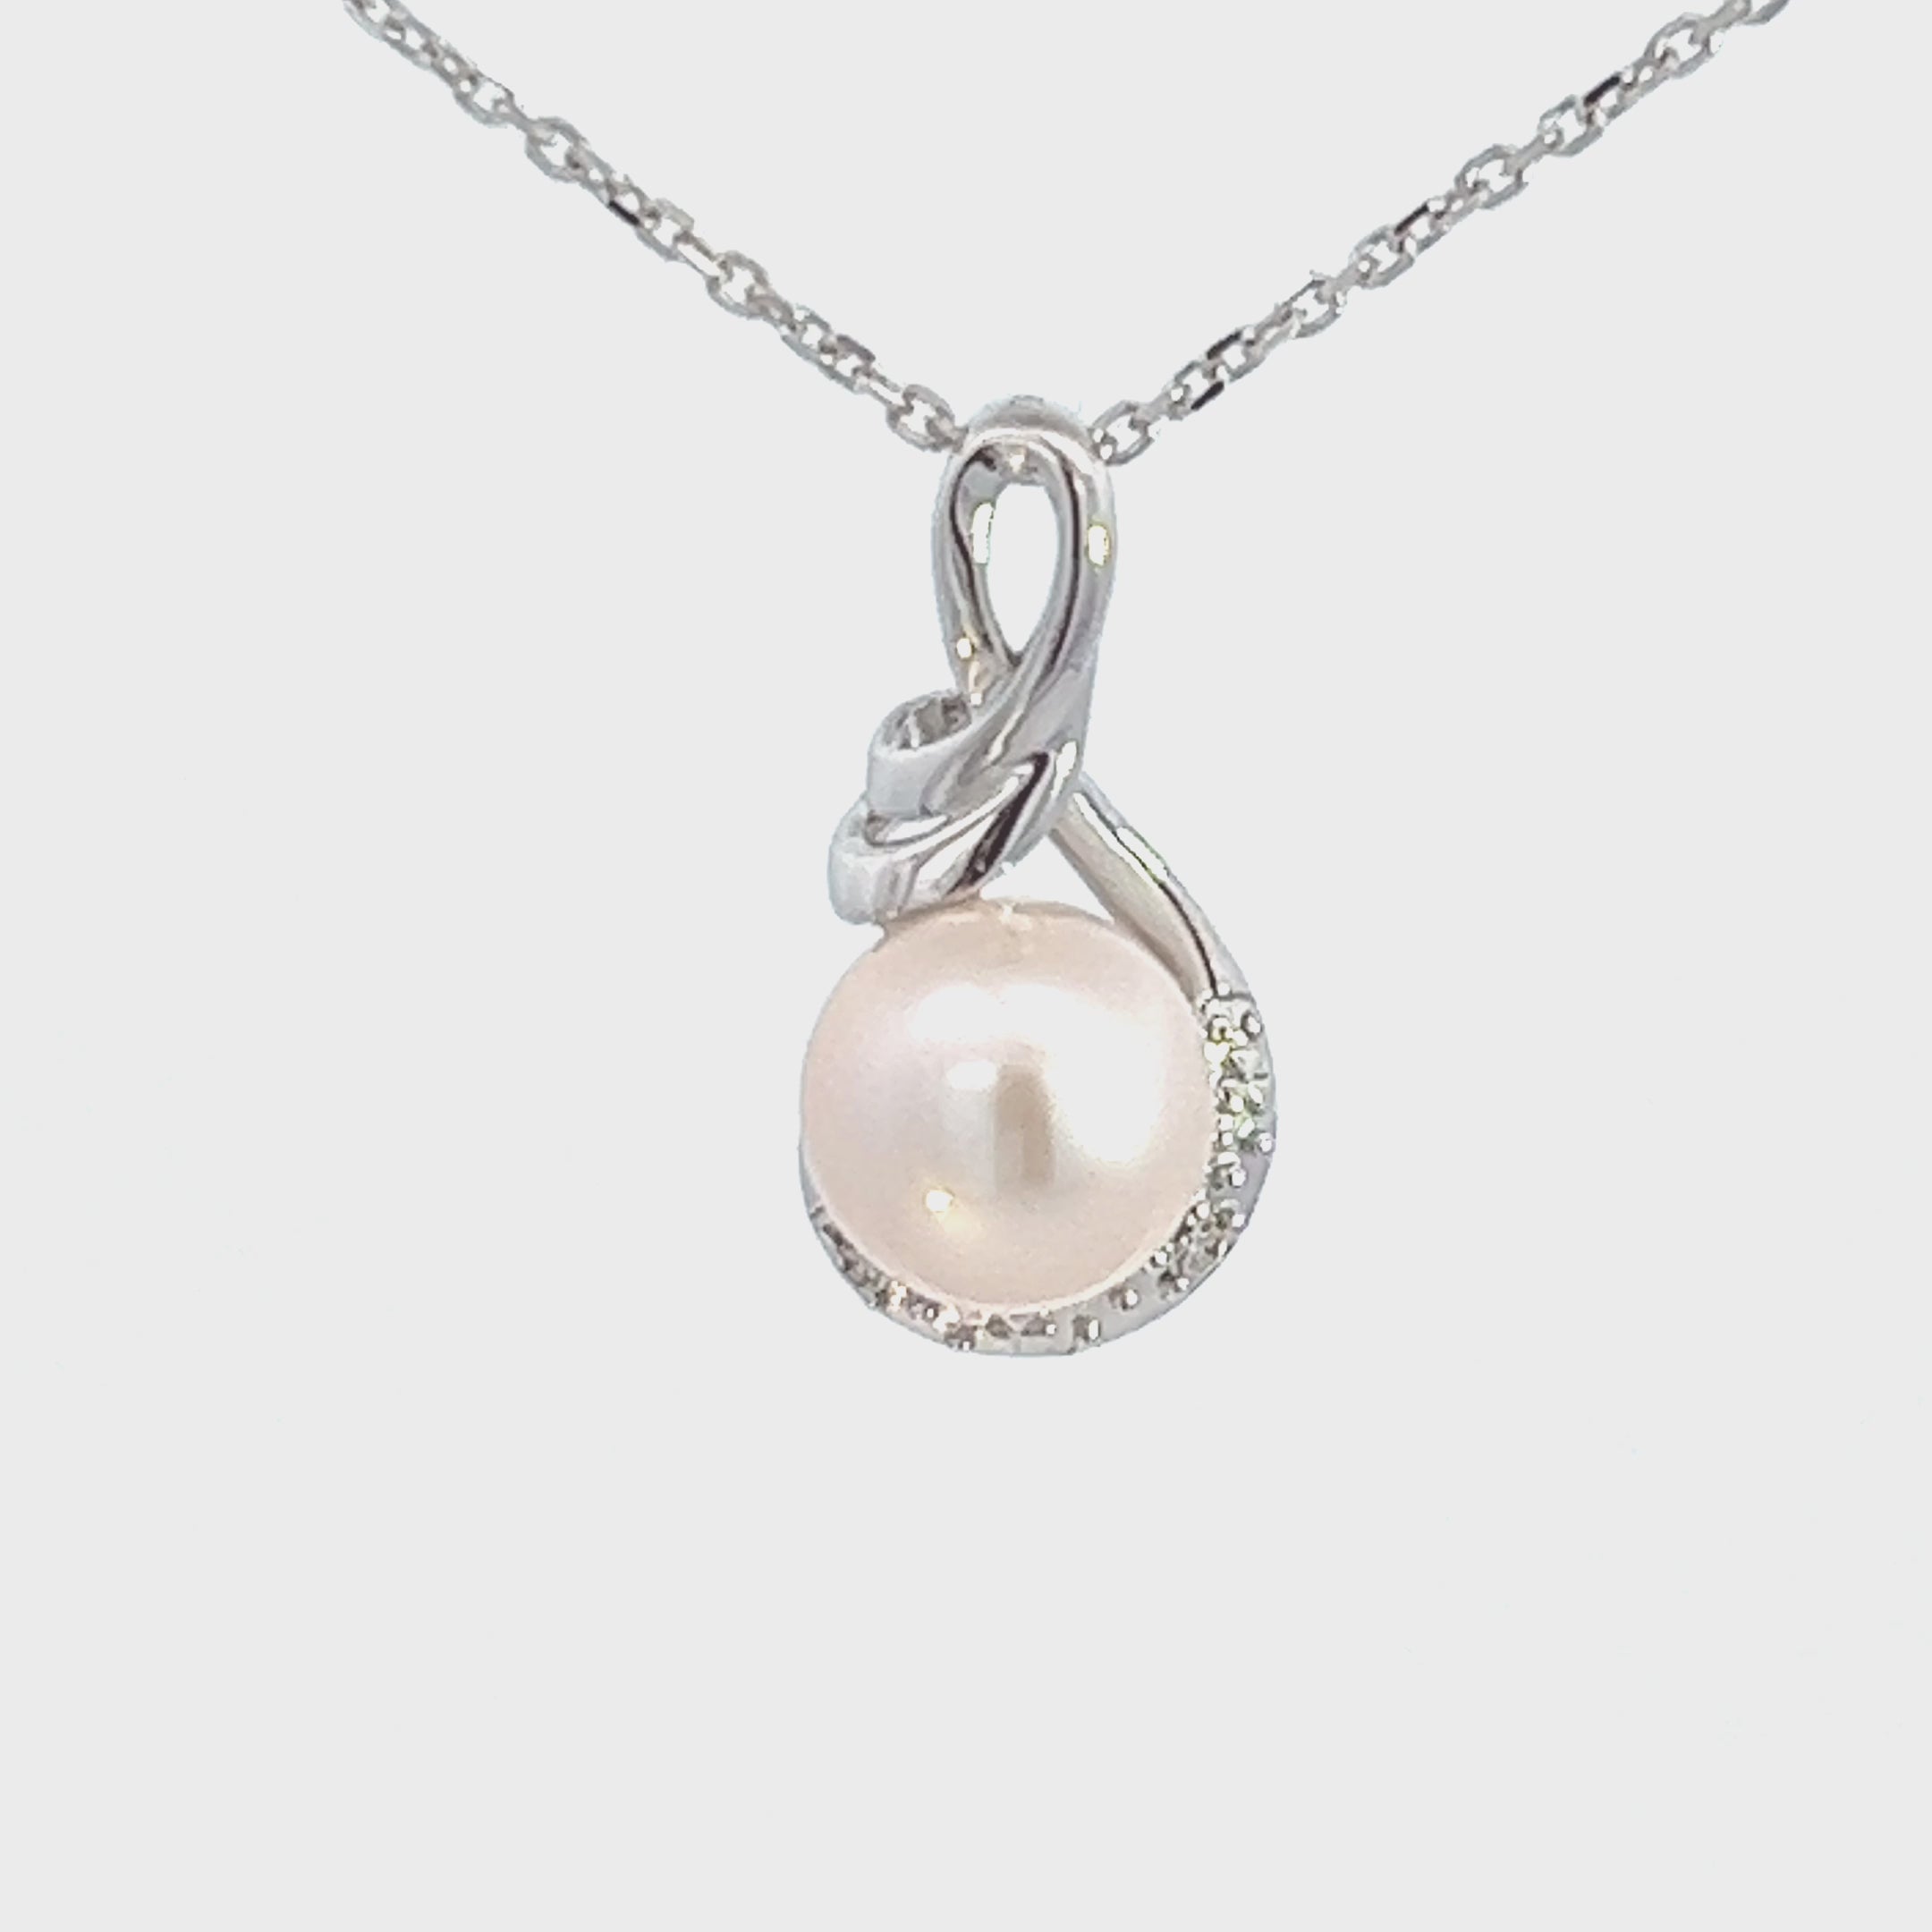 Mikimoto South Sea Single Cultured Pearl Pendant in White Gold, 18